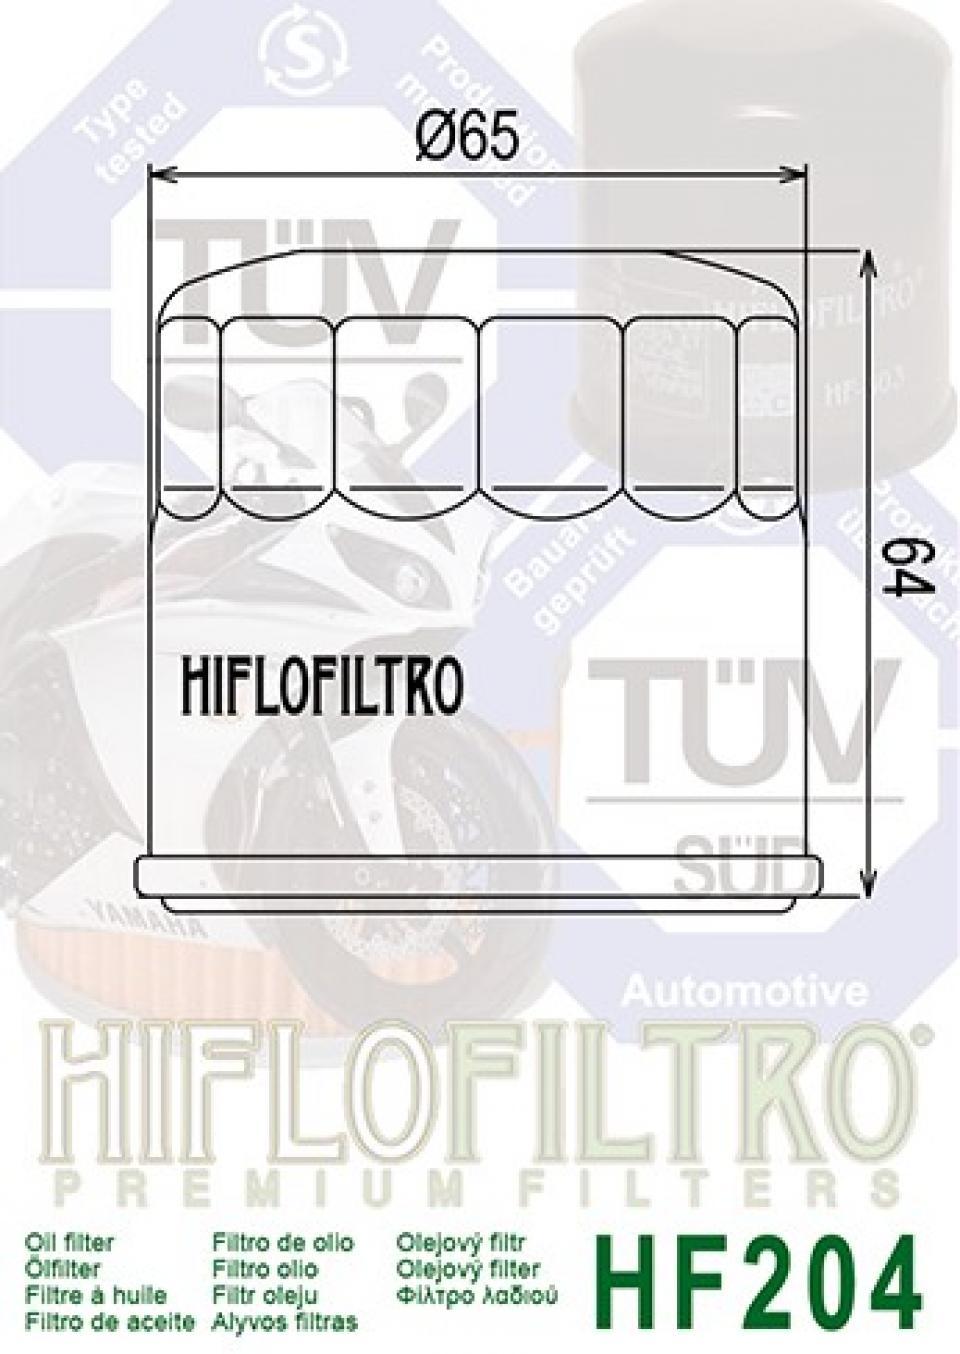 Filtre à huile Hiflofiltro pour Moto Yamaha 1300 FJR 2014 à 2019 Neuf